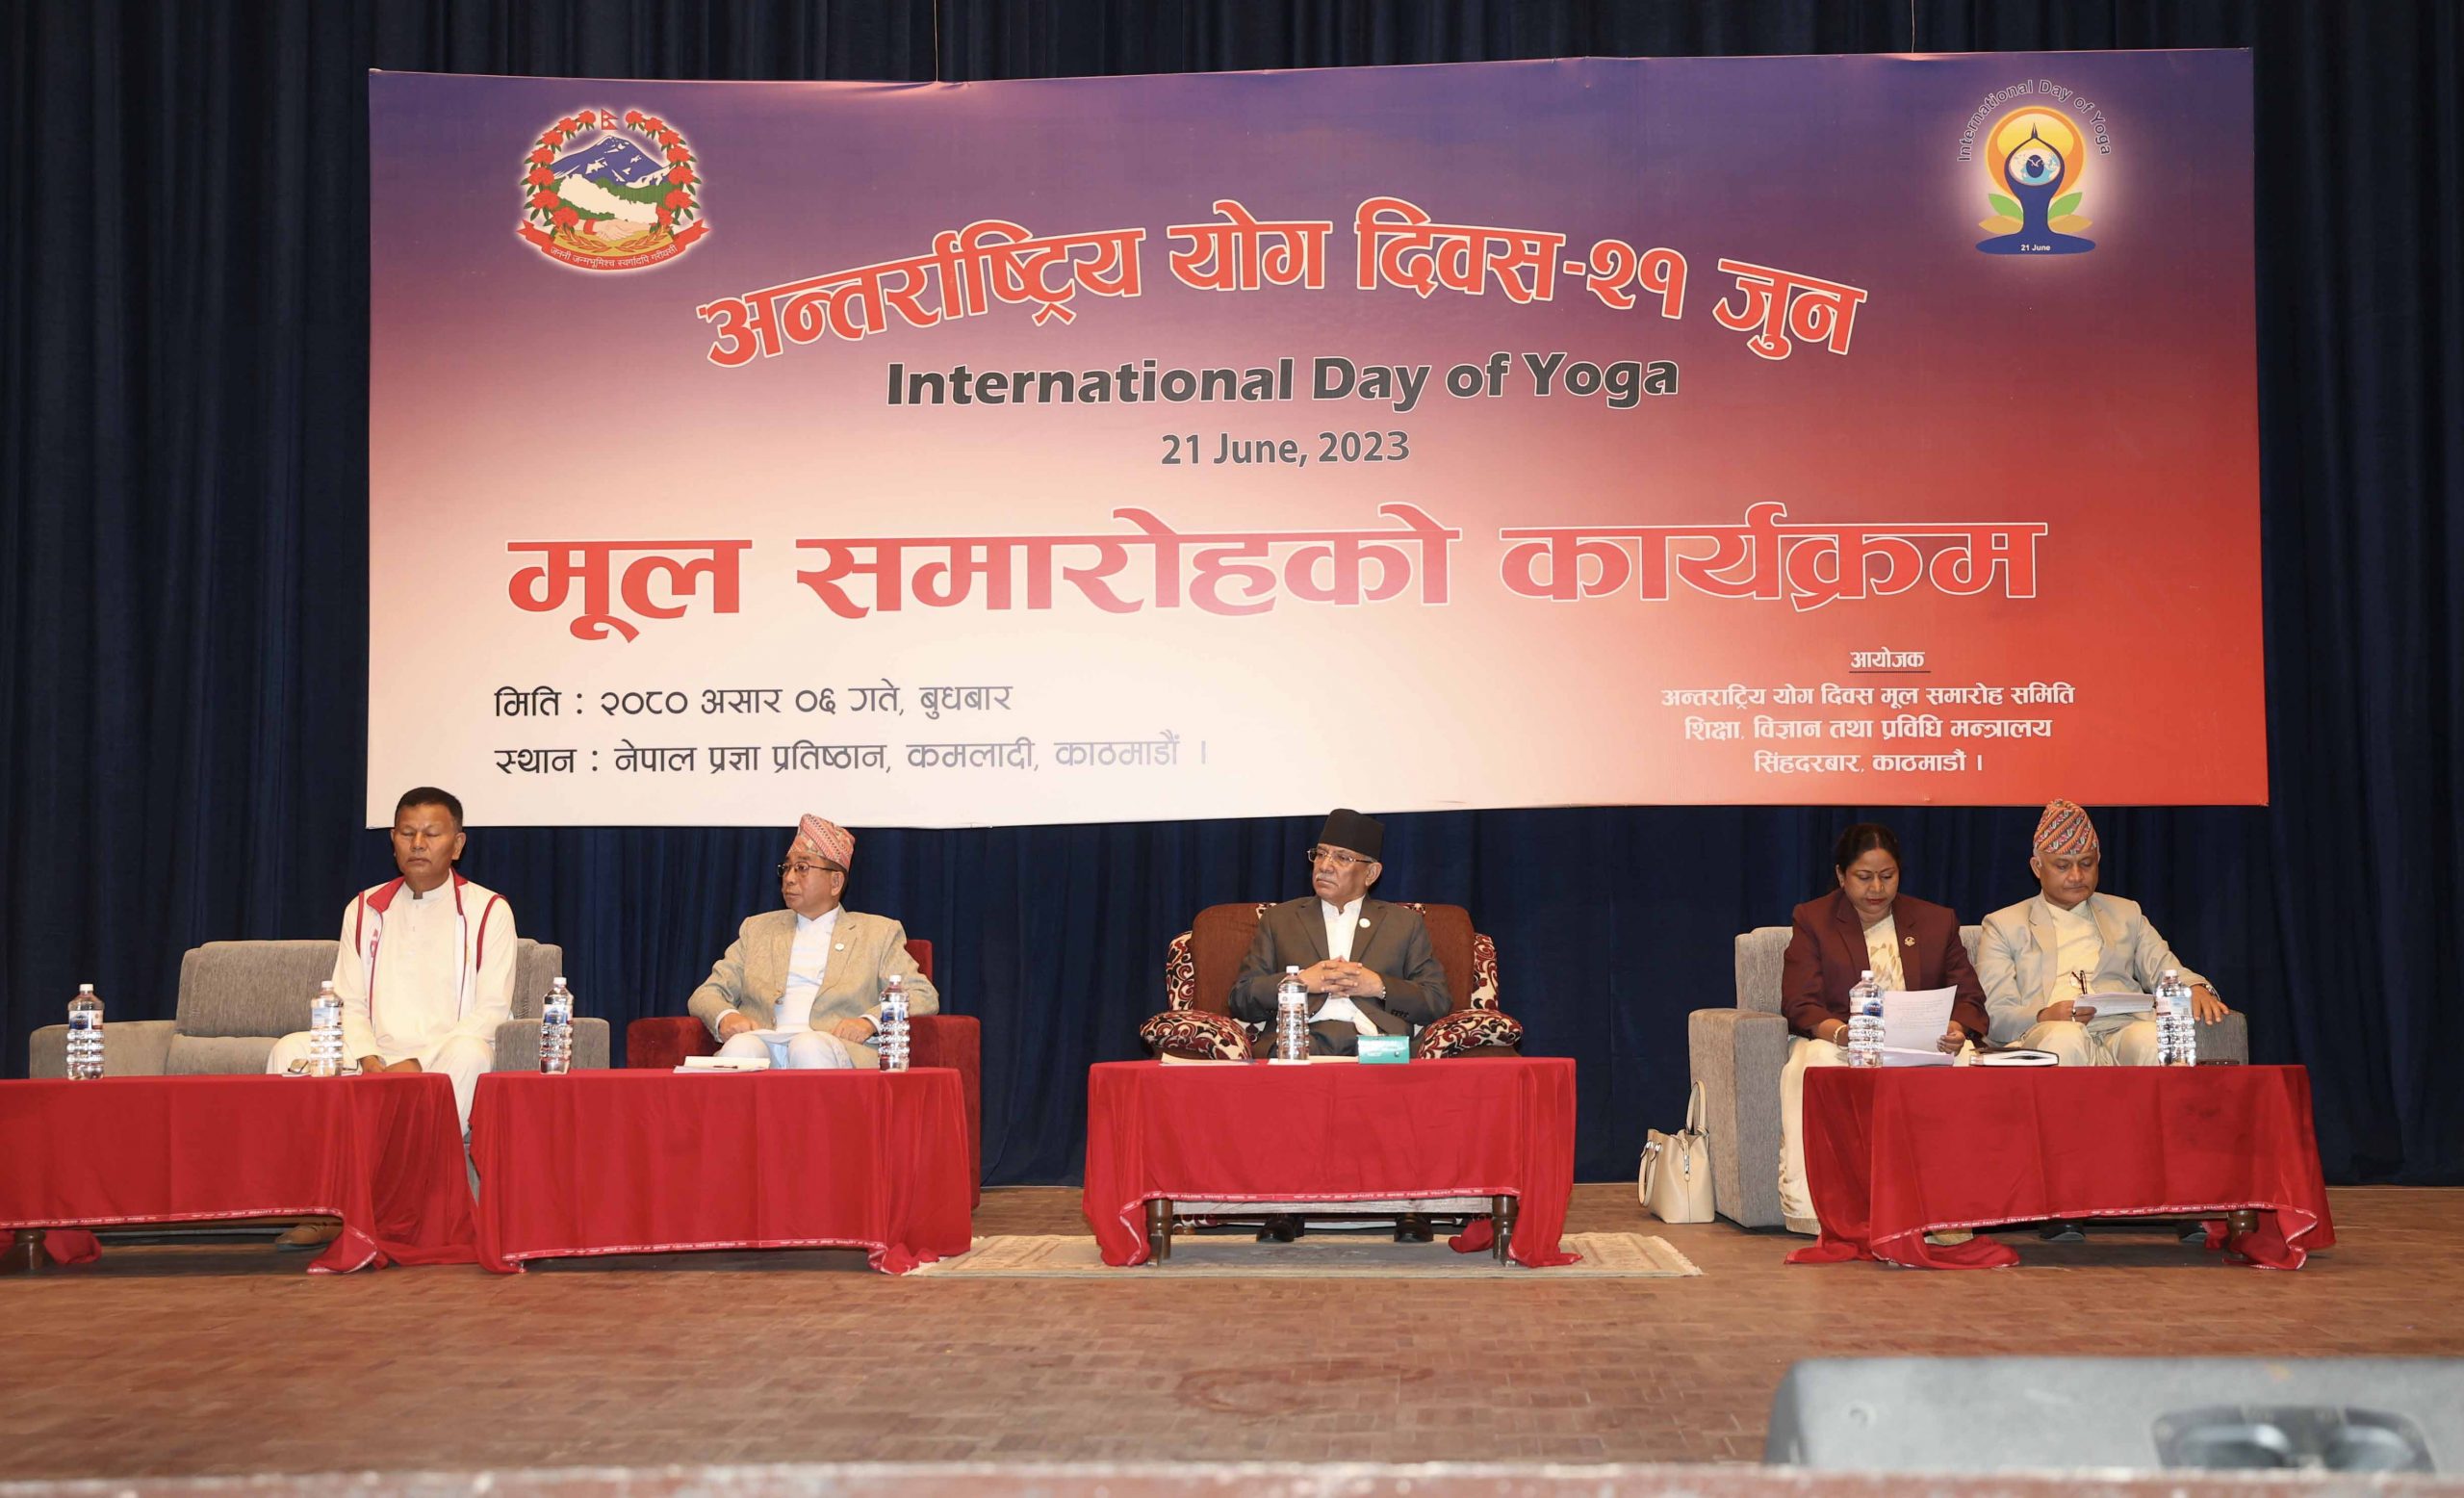 योगसम्बन्धी विश्वभरकै अध्येताका लागि नेपाल मूल गन्तव्य बन्न सक्छ : प्रधानमन्त्री